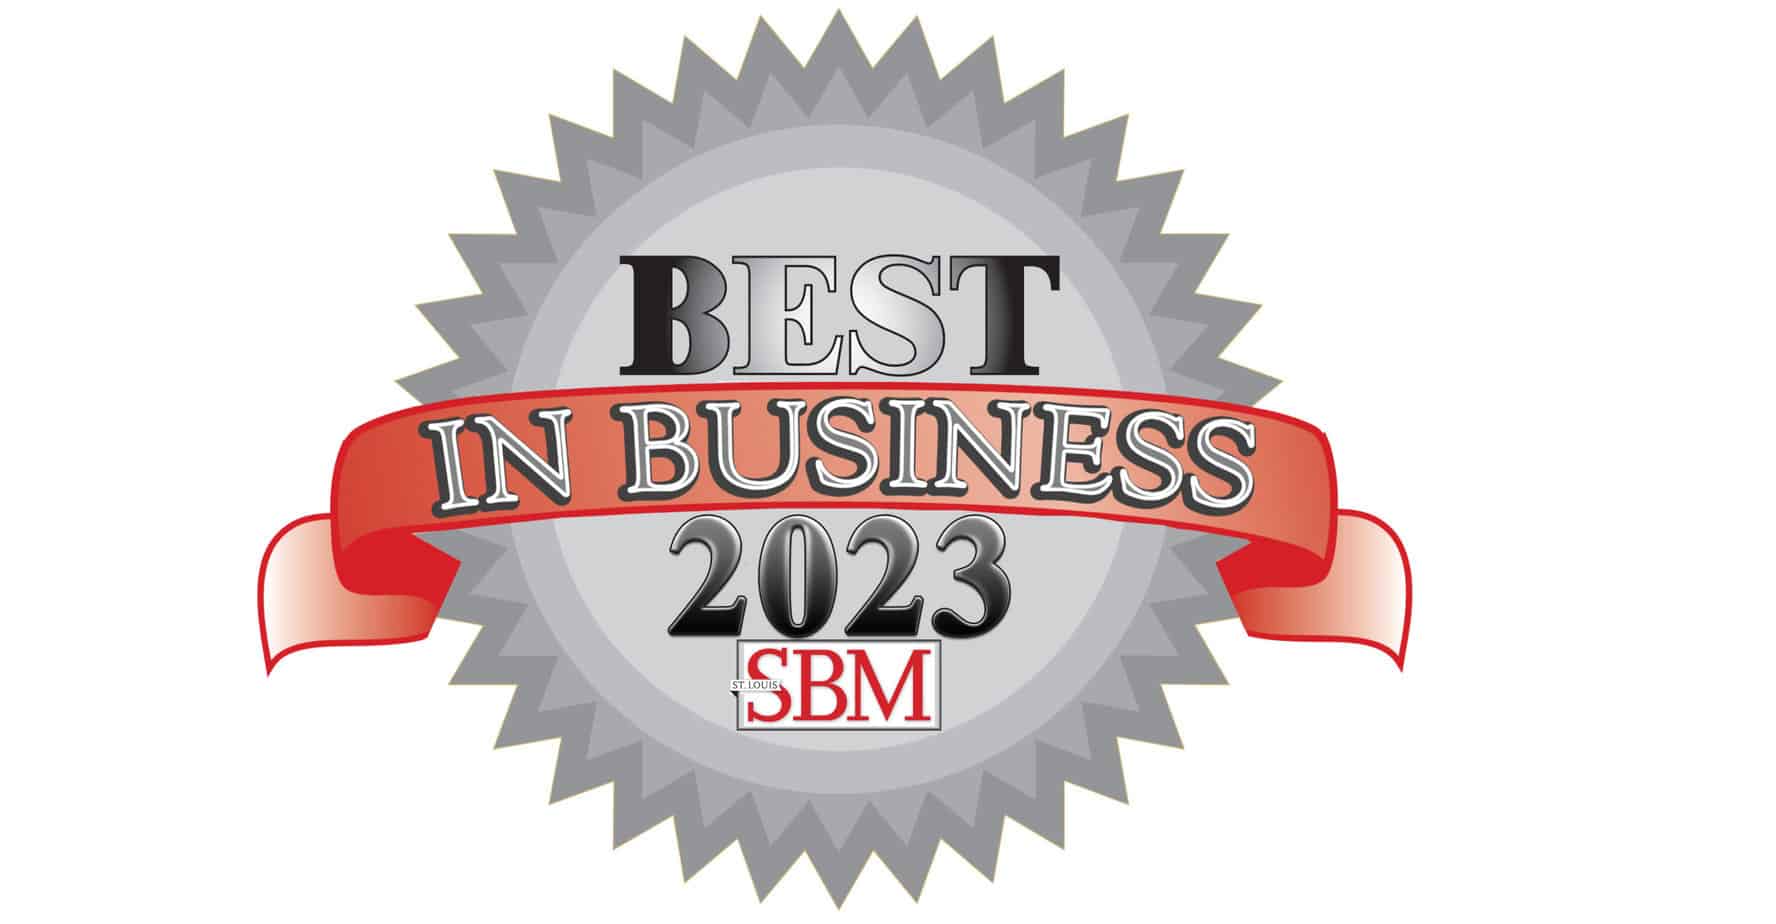 Best in Business 2023 SBM logo